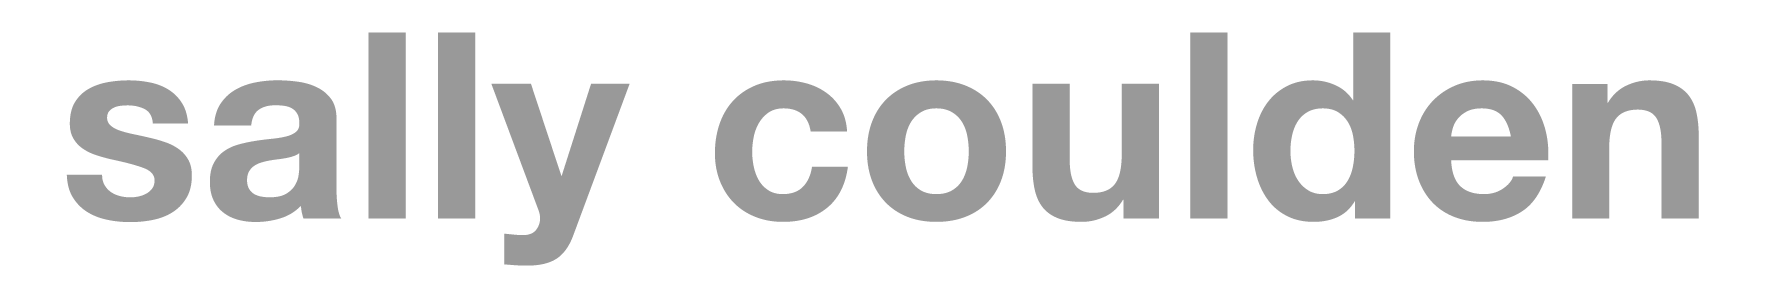 Sally Coulden logo